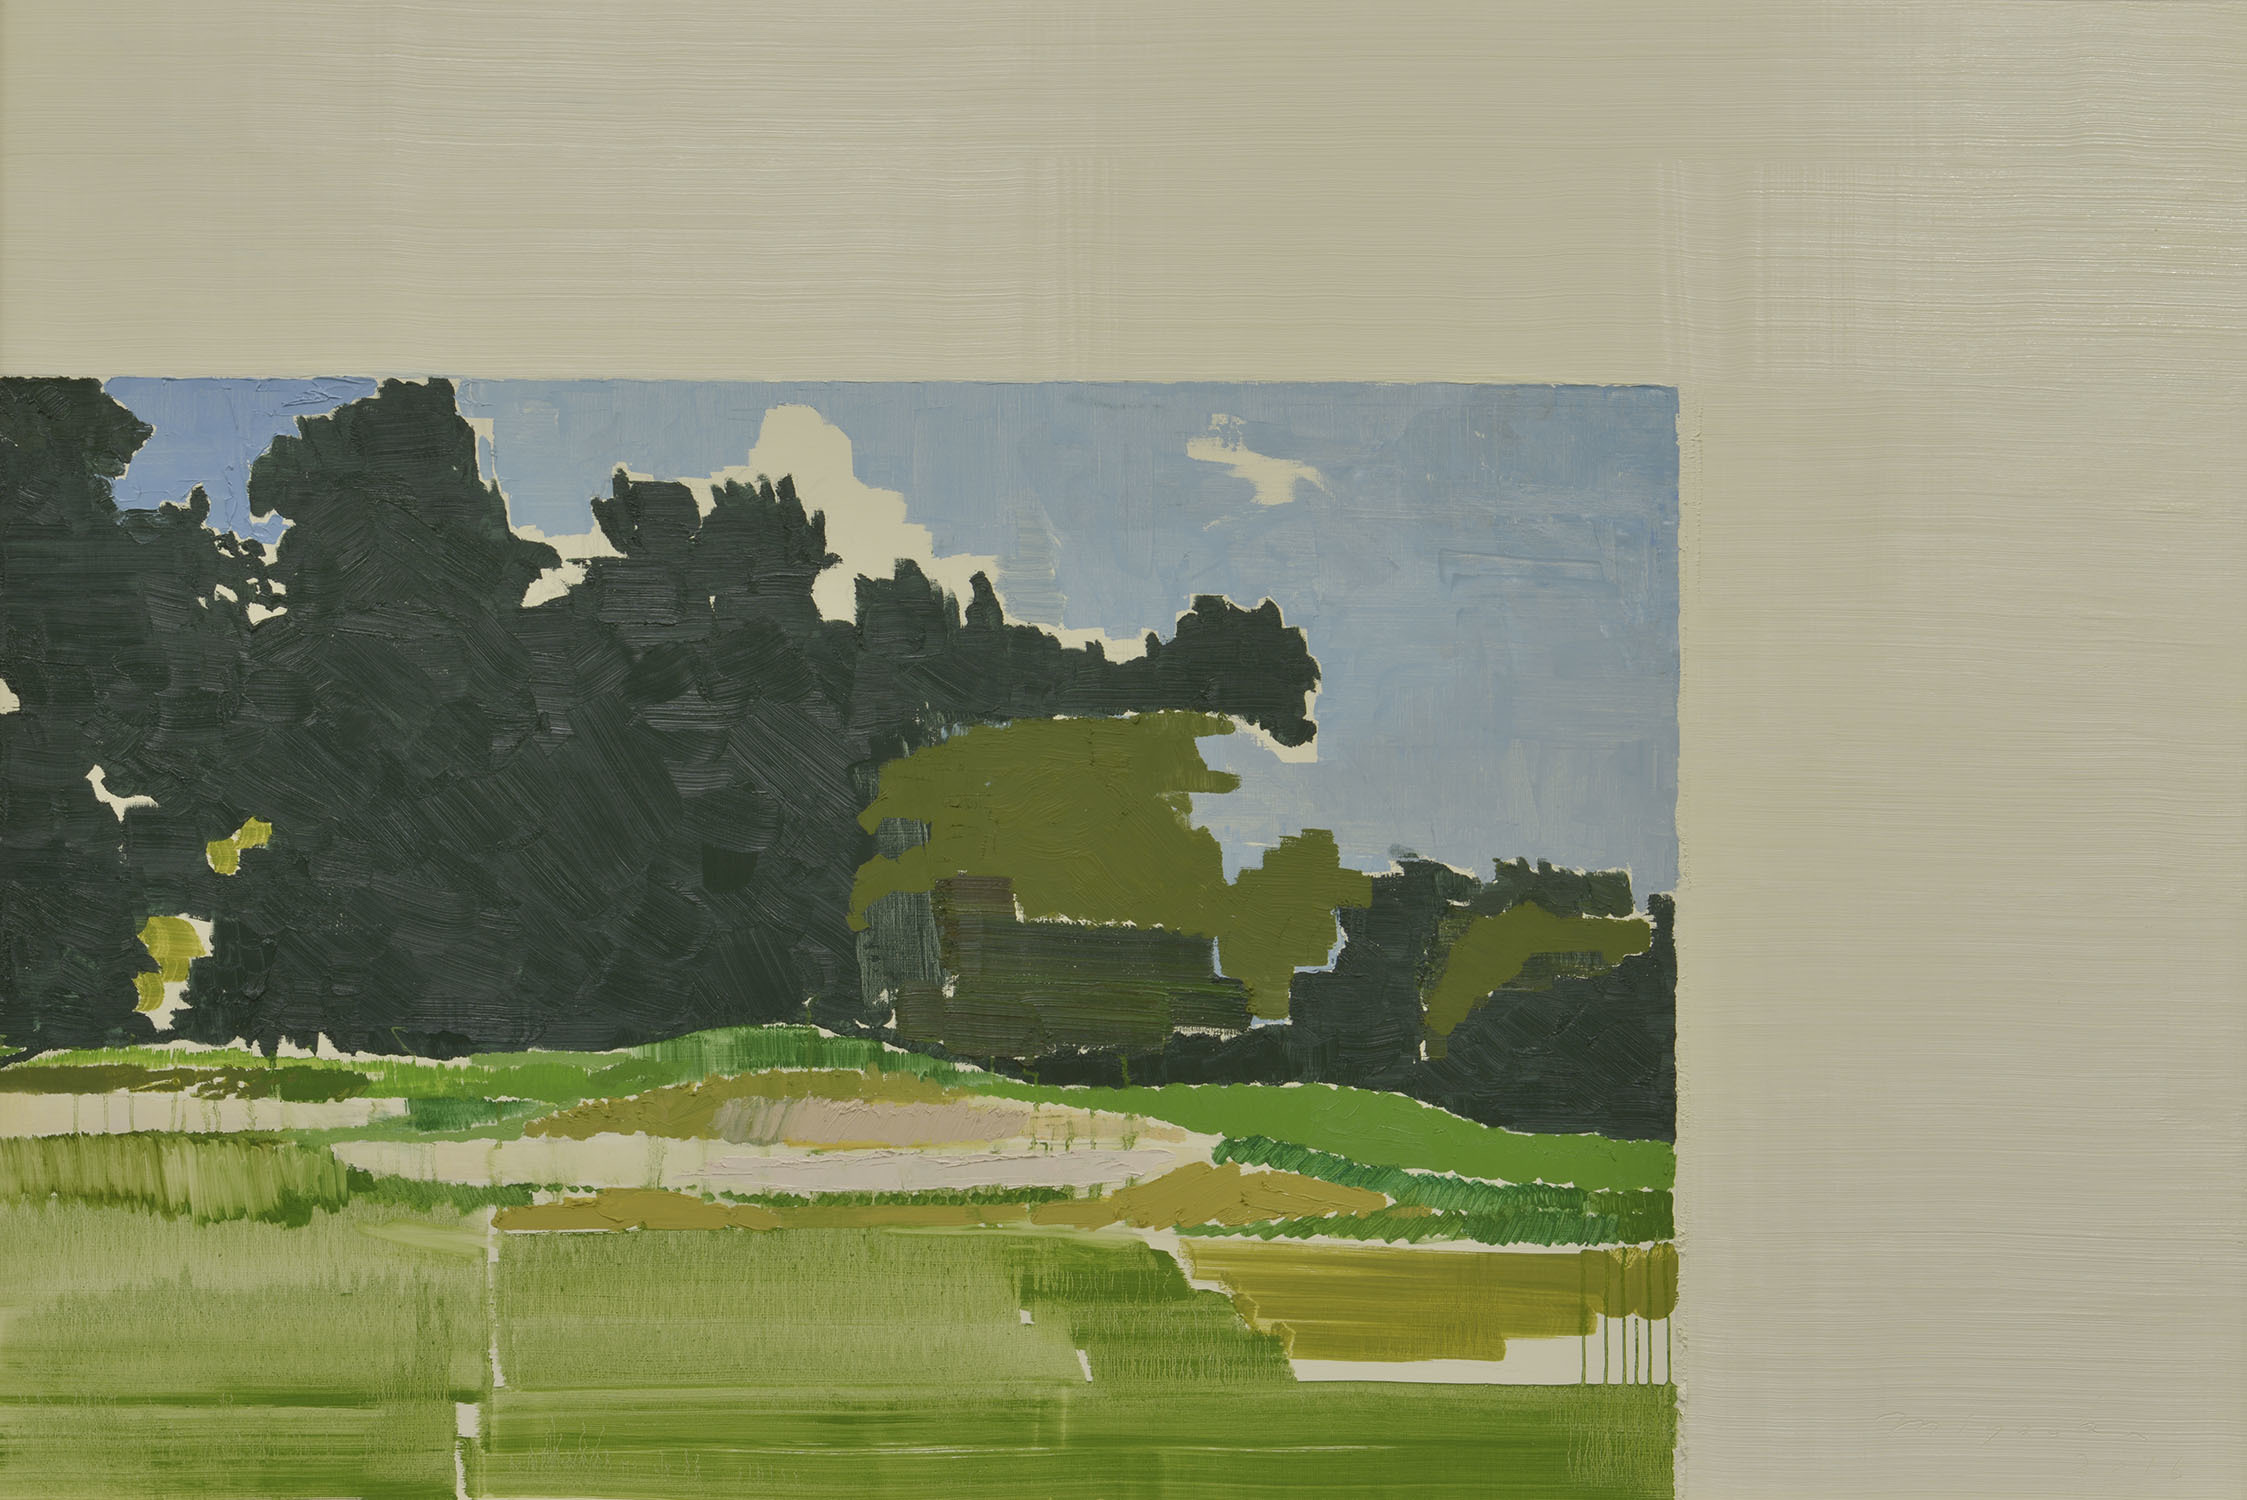 宮岡 俊夫（みやおか としお） 《Landscape》2016 年 油彩・キャンバス 132.7×196.2 ㎝ 1984 年生まれ 